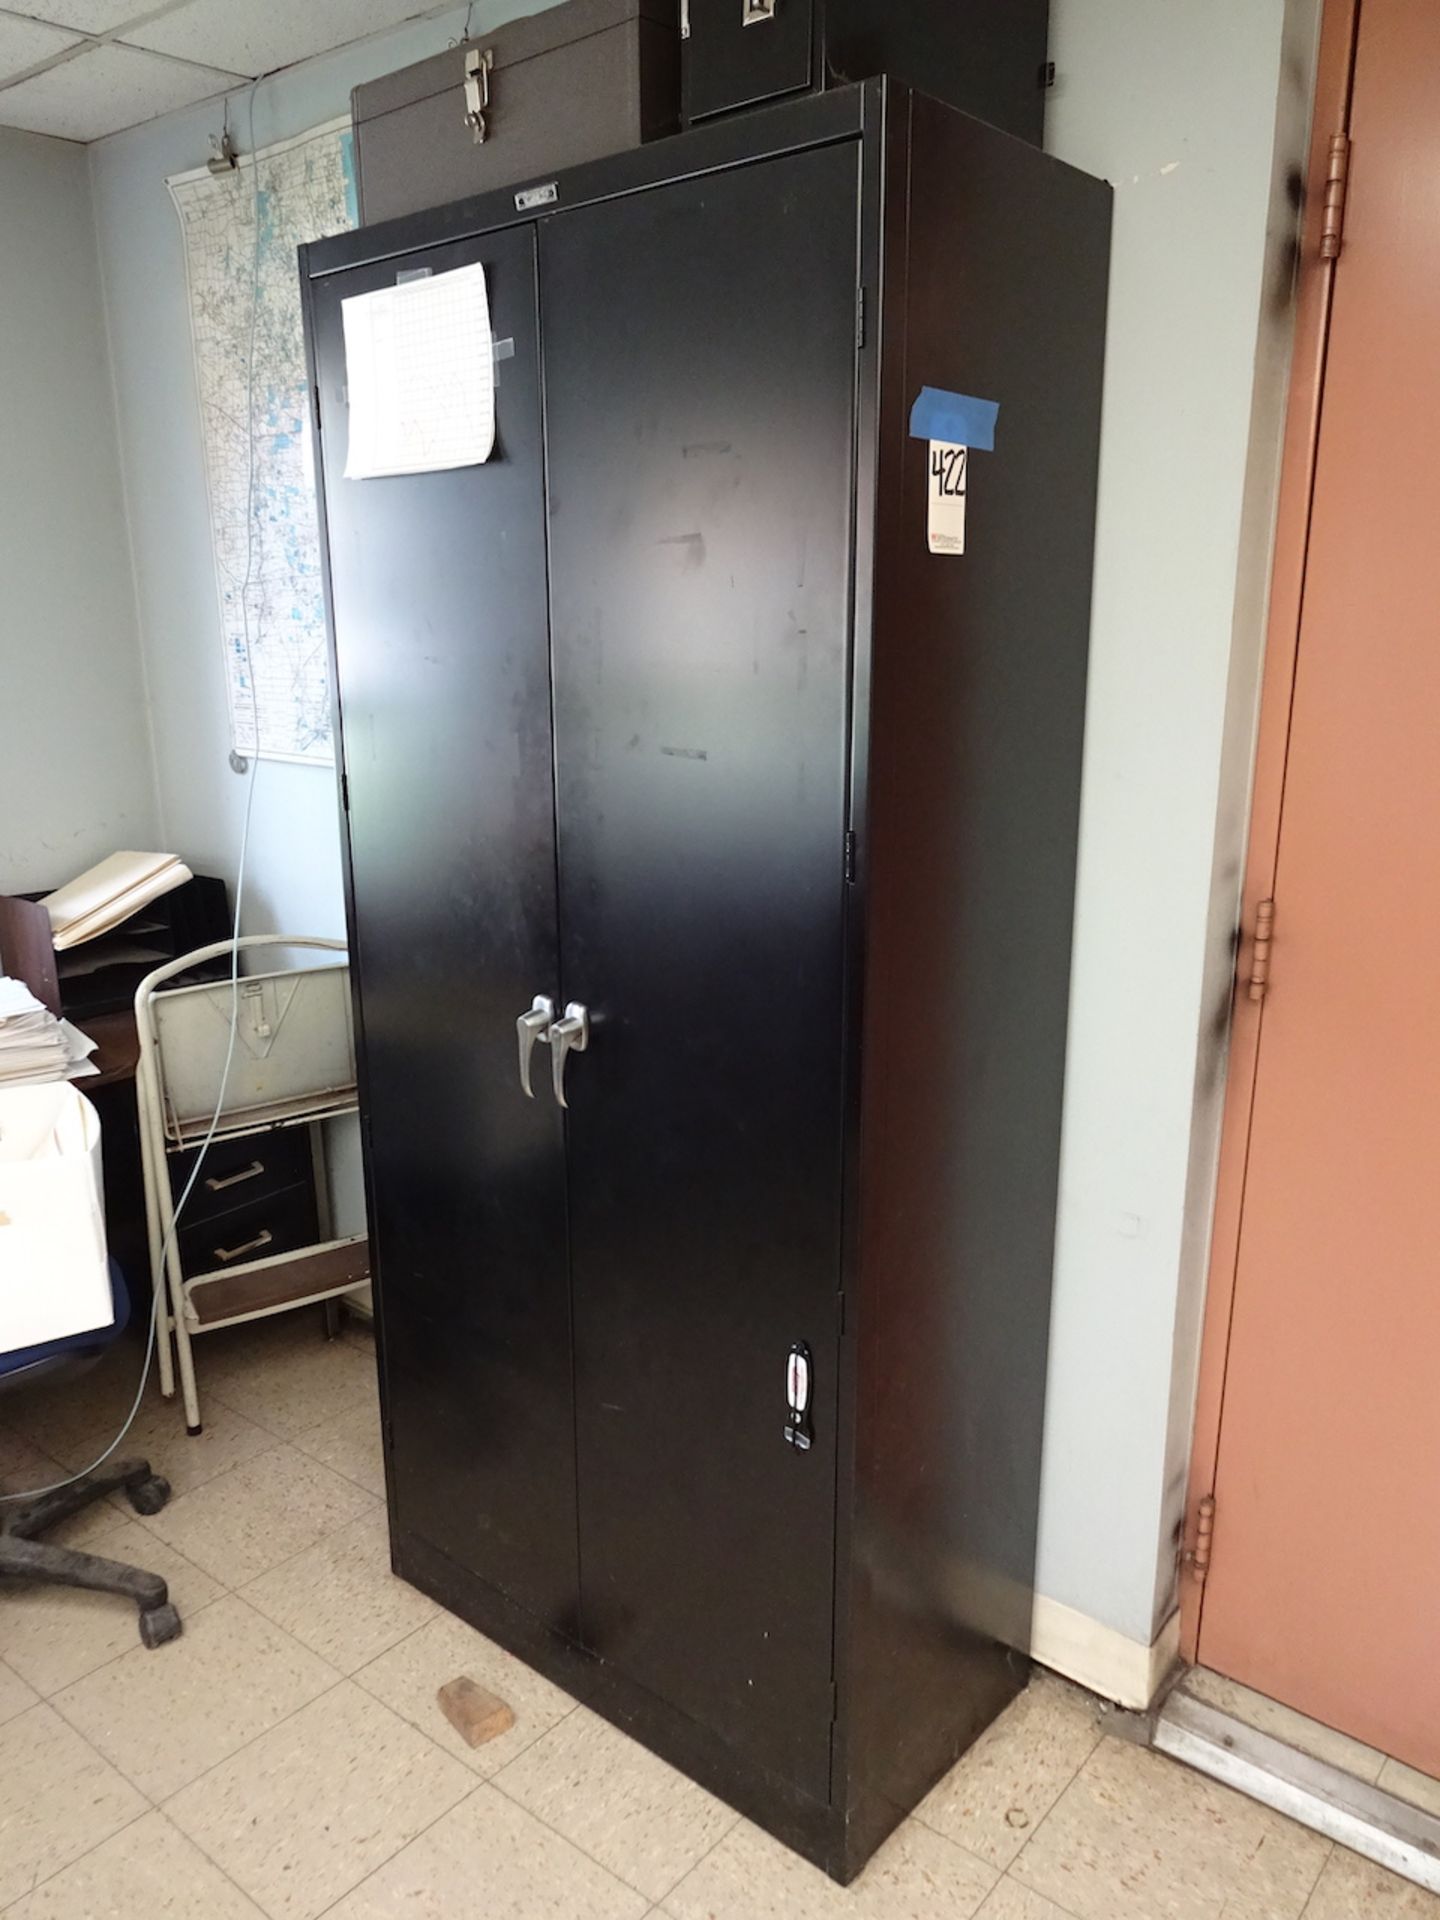 2-Door Steel Storage Cabinet (no contents)